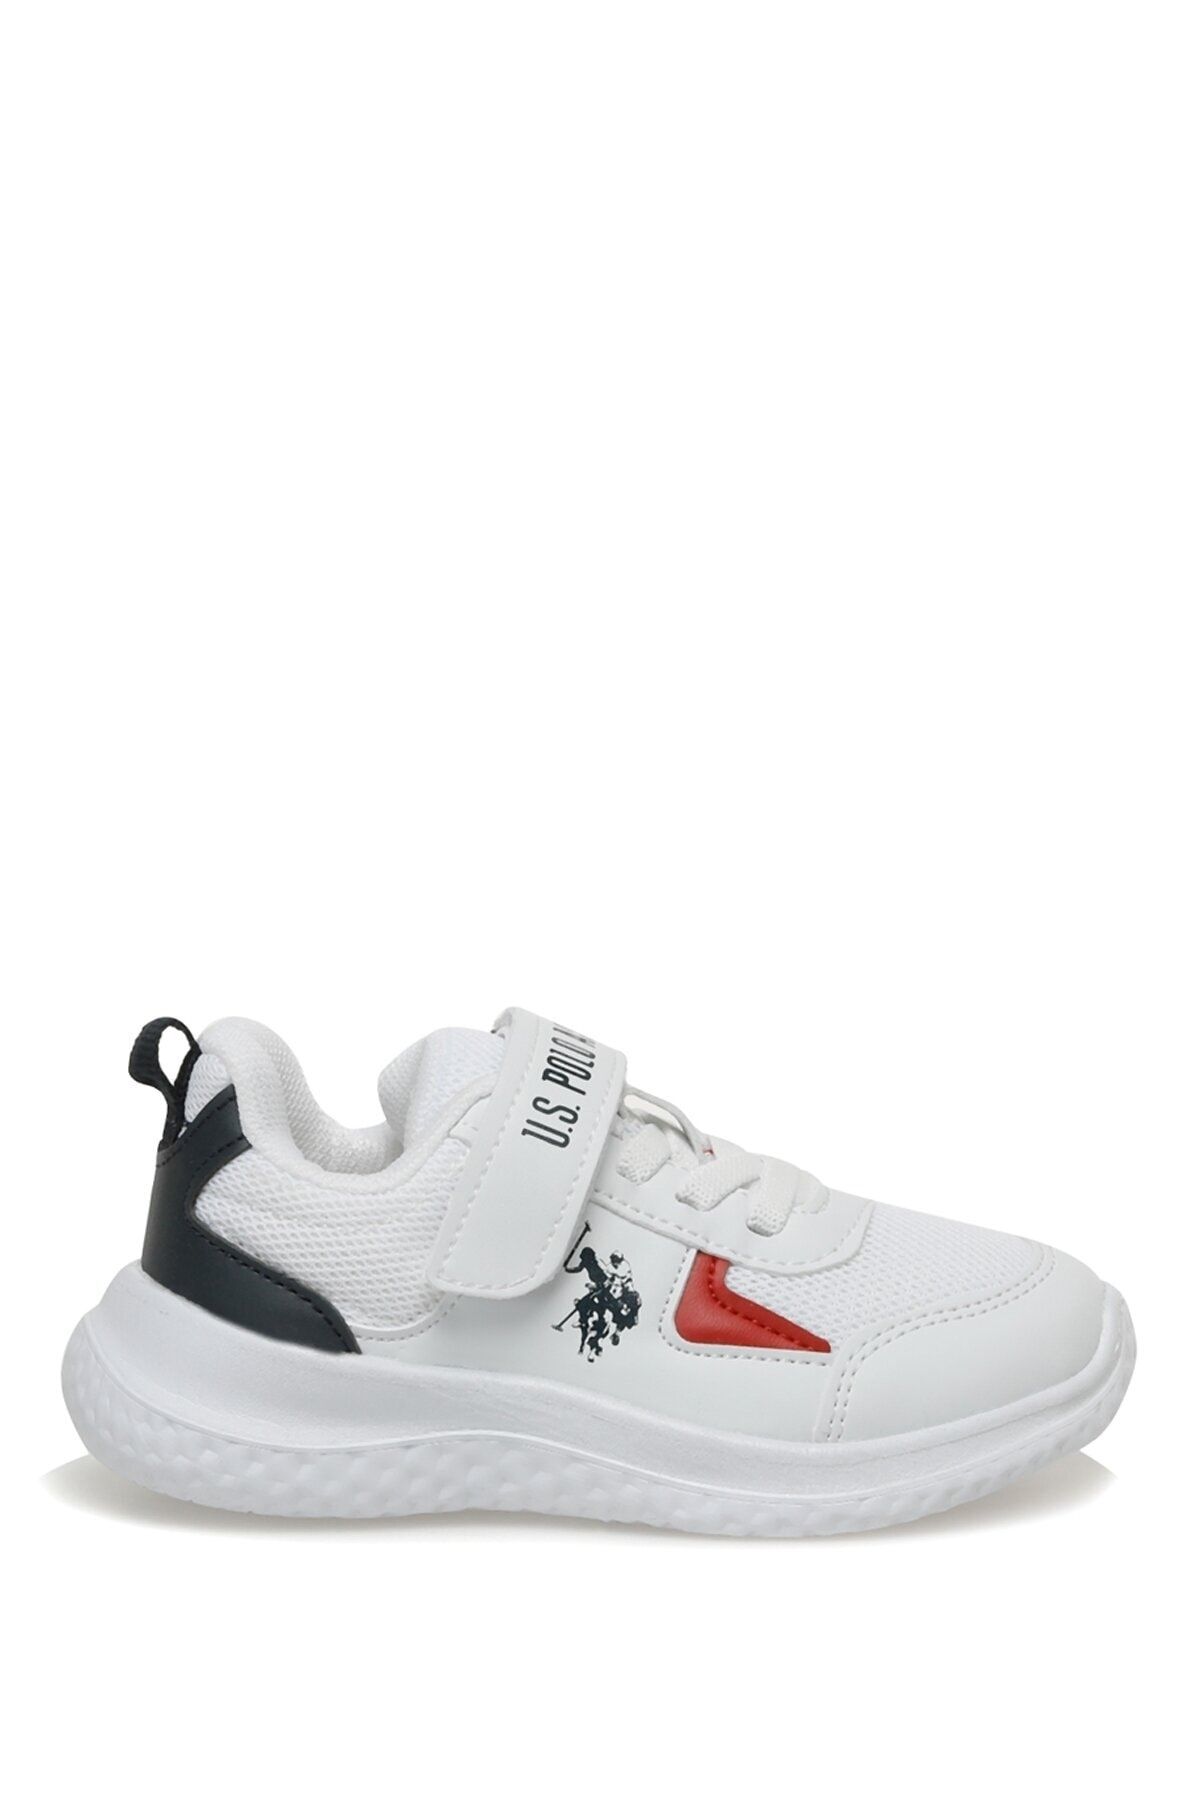 U.S. Polo Assn. Douglas Jr 3fx Beyaz Erkek Çocuk Koşu Ayakkabısı